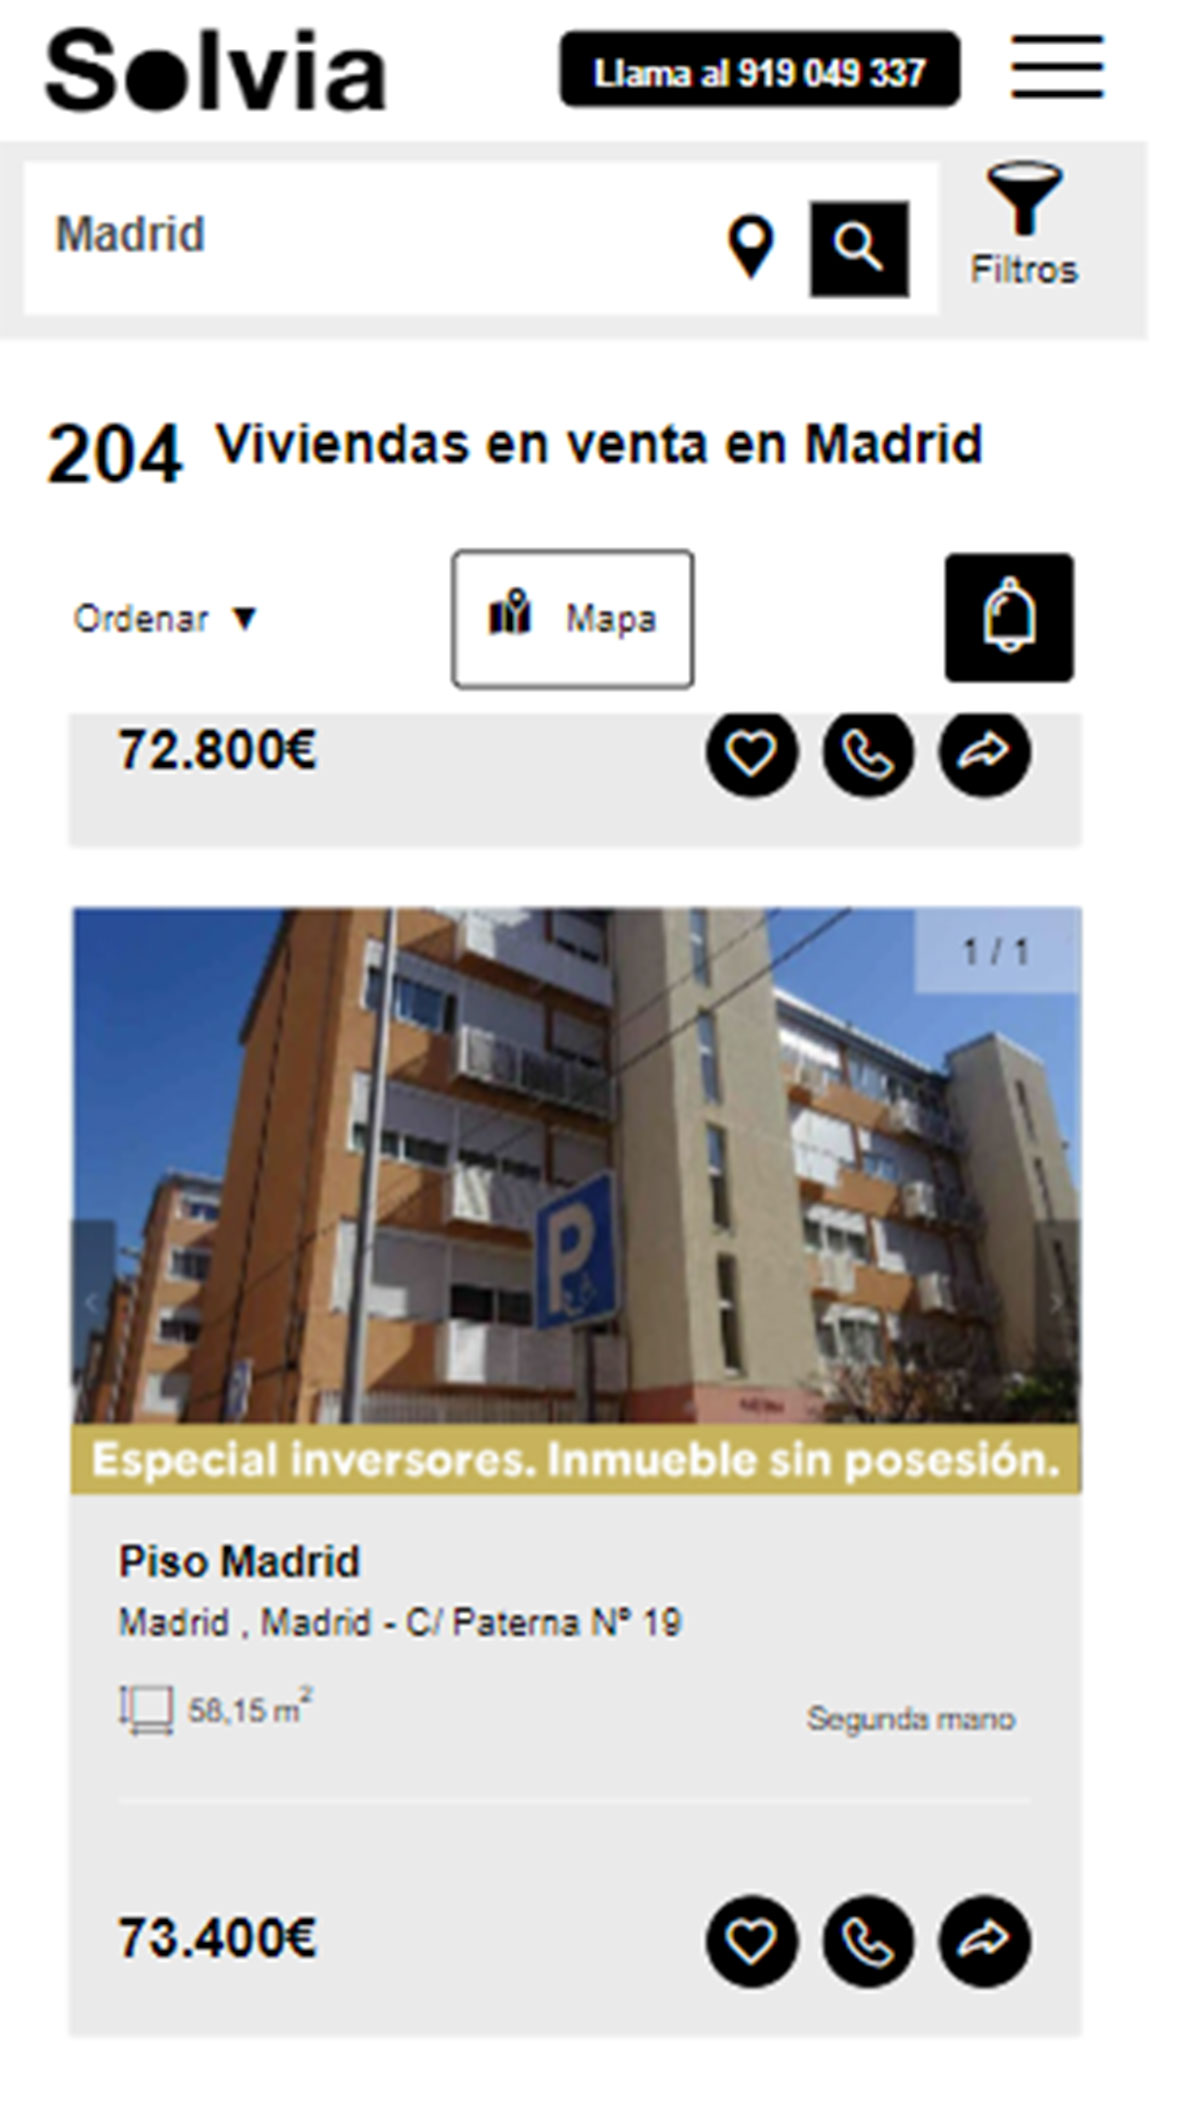 Piso en la ciudad de Madrid por 73.400 euros